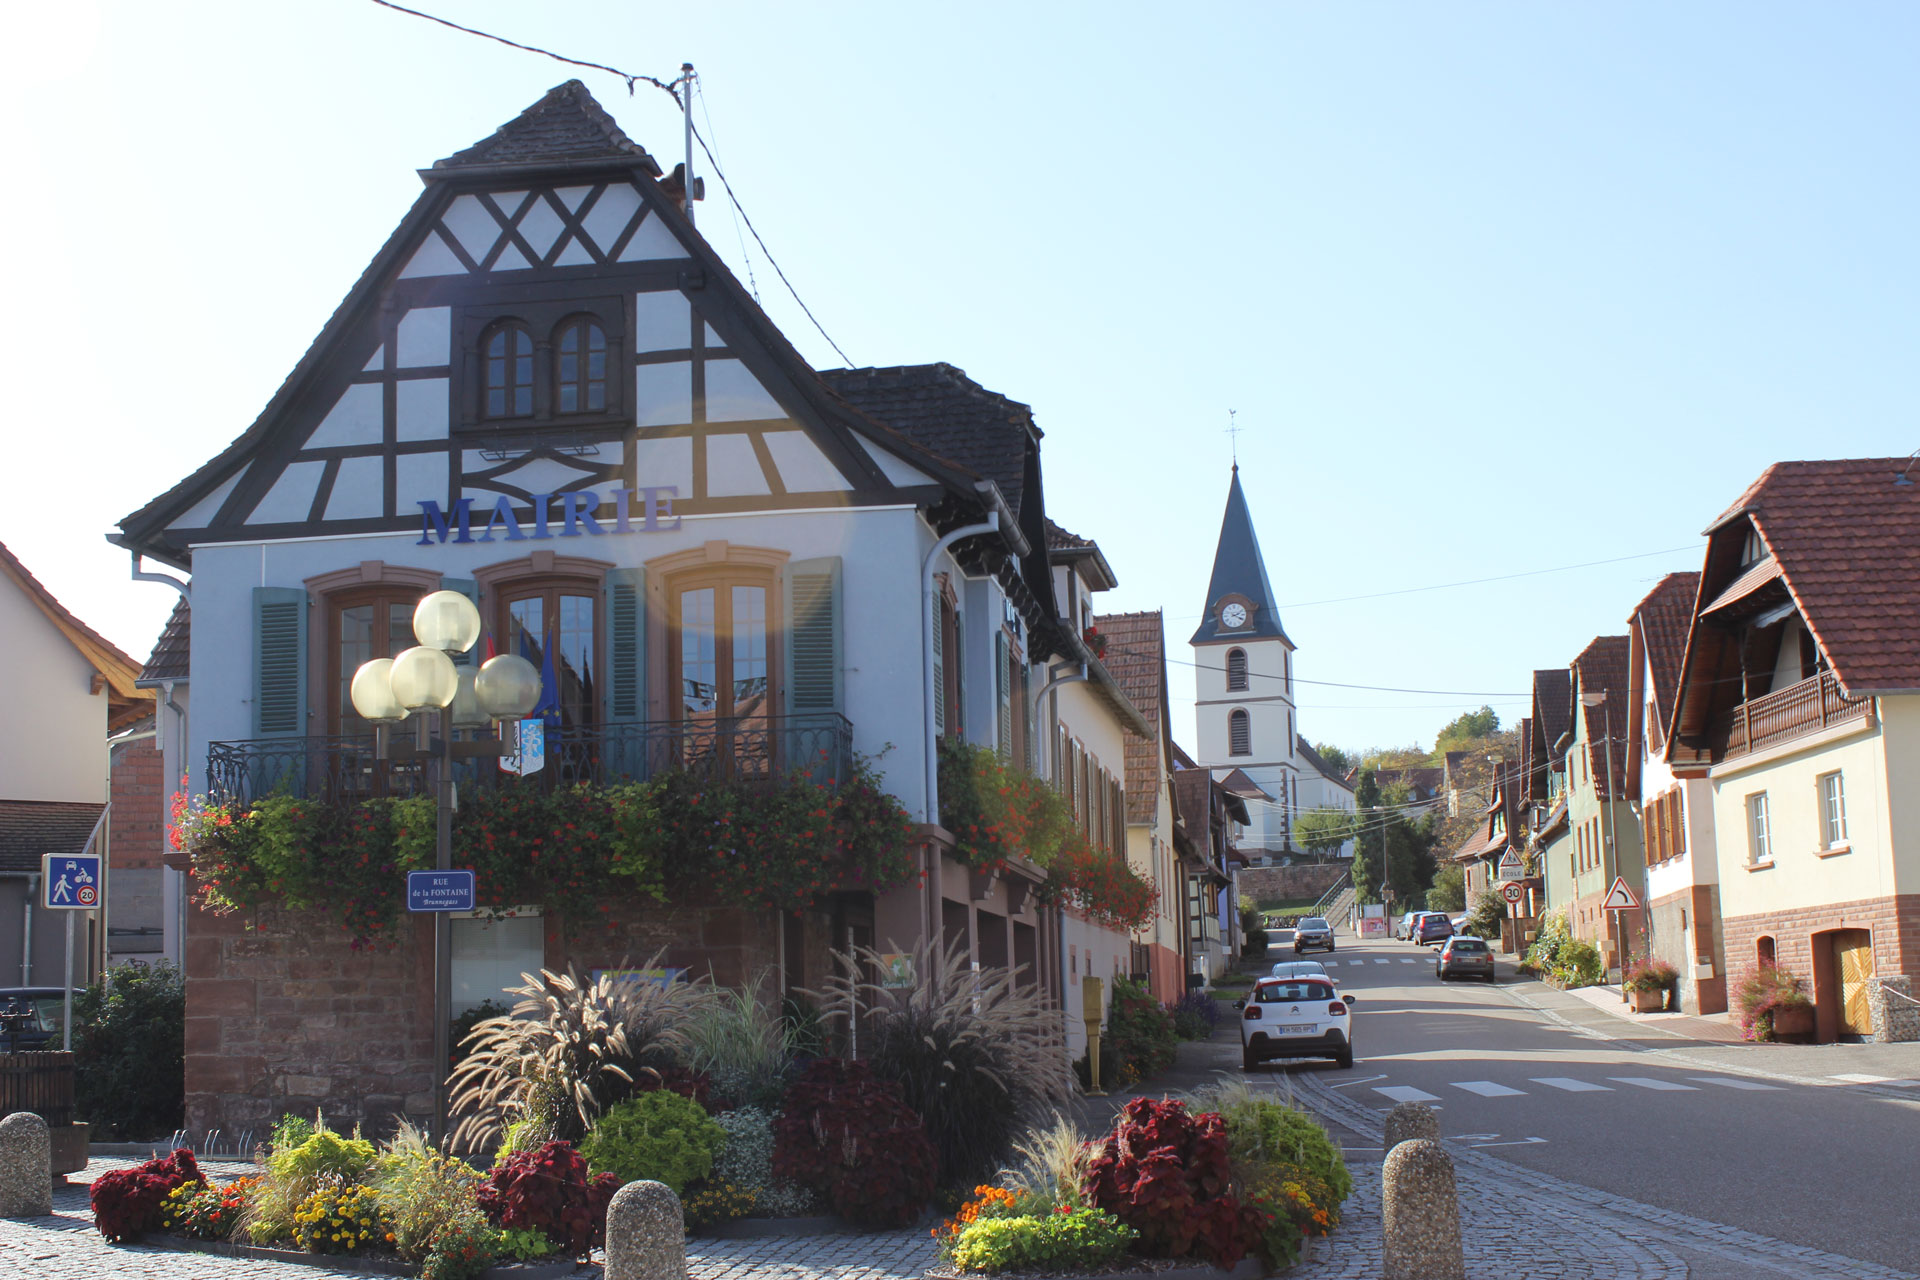 Visite guidée de Morsbronn-les-Bains en juin 2022